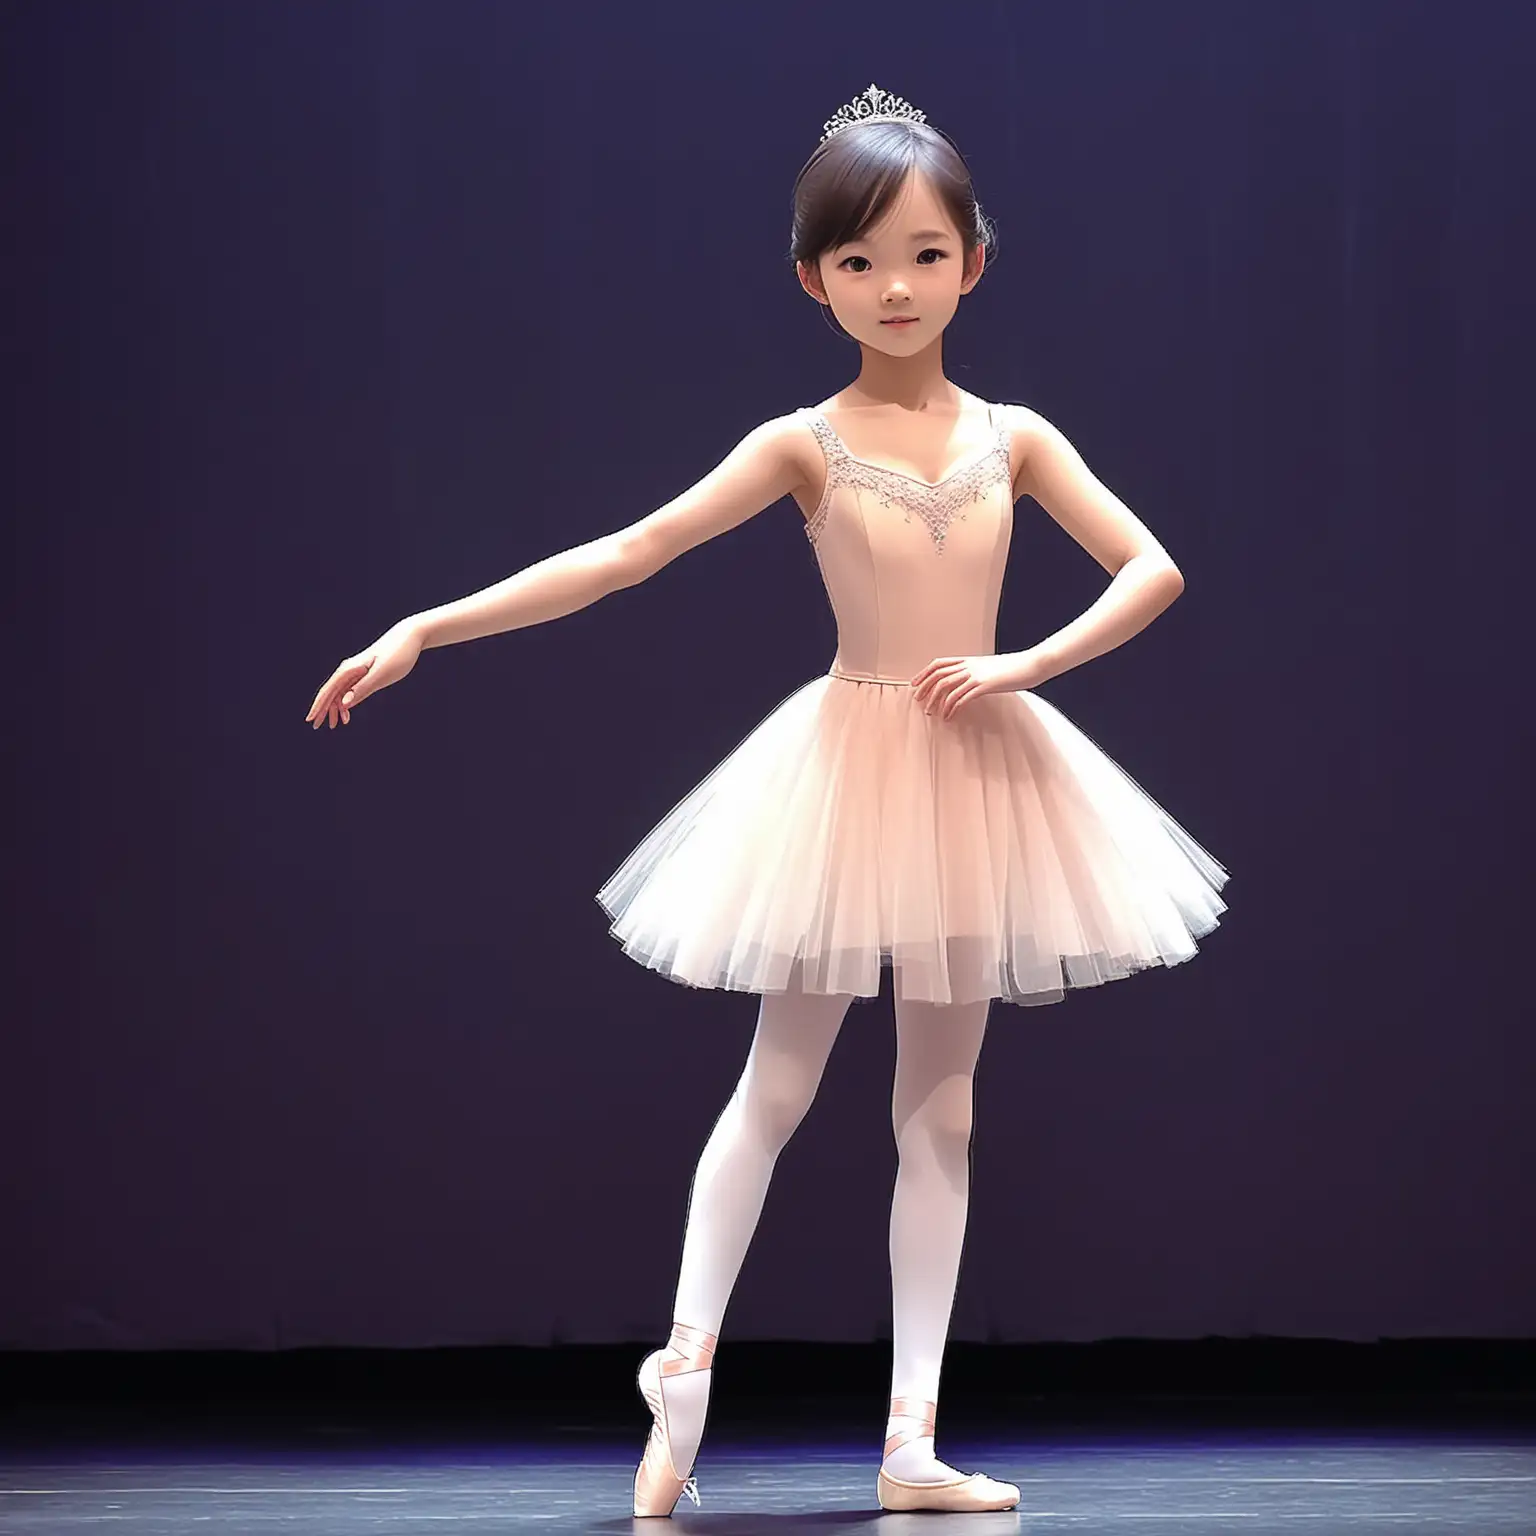 Linh là 1 cô gái xinh đẹp 13 tuổi. Mặc 1 bộ đồ múa ba lê đứng trên 1 sân khấu